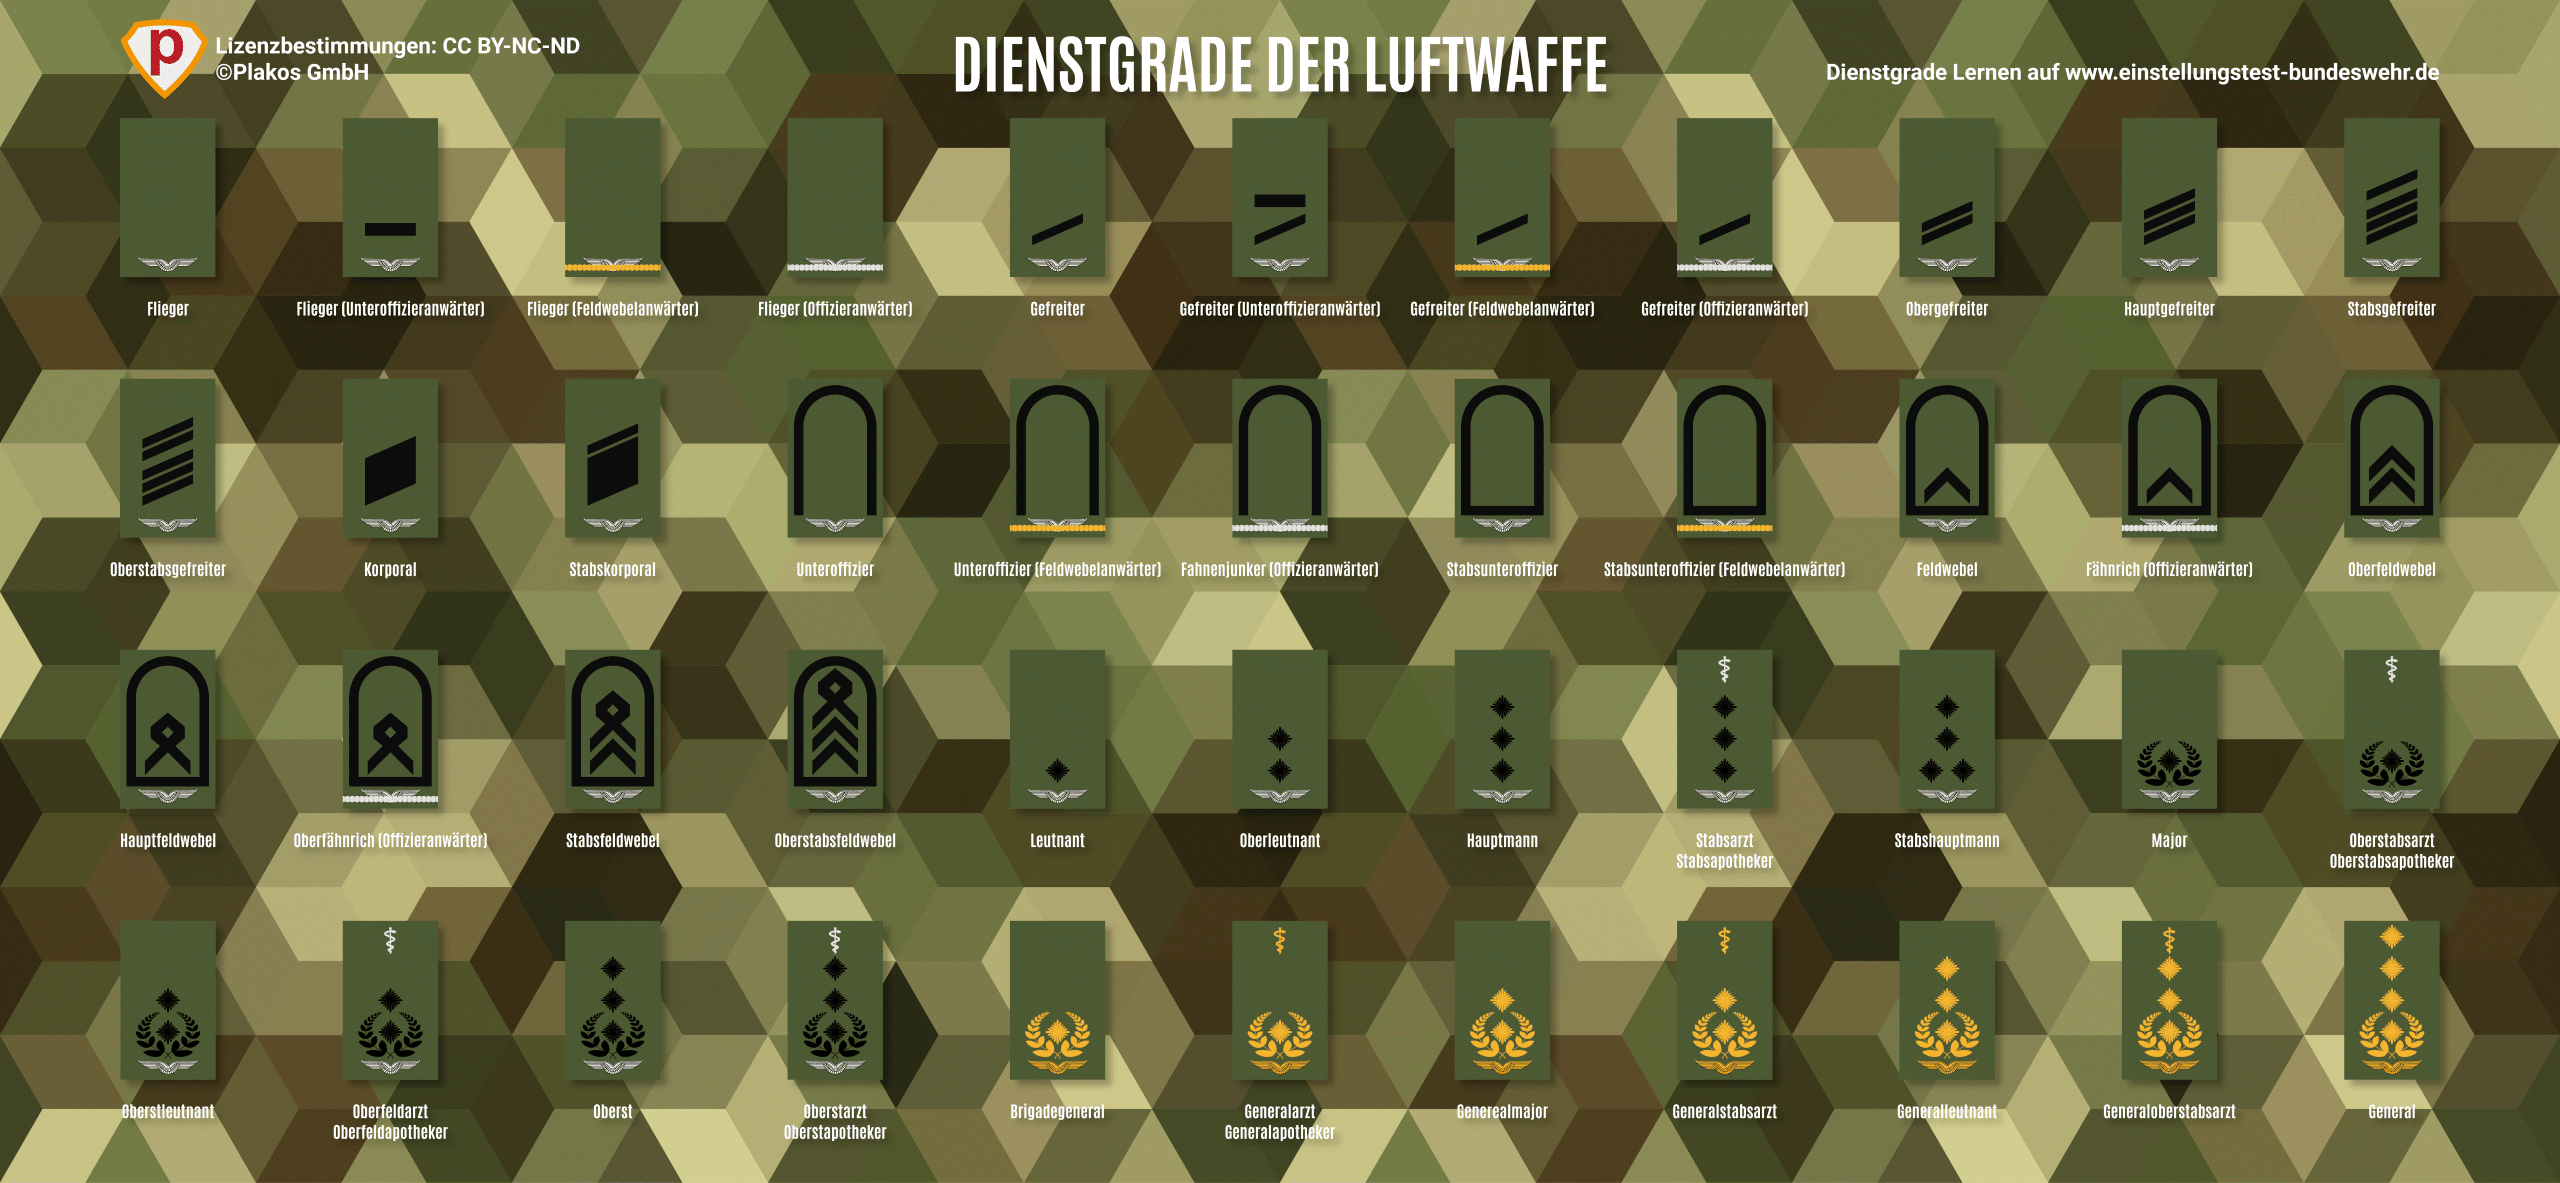 Bundeswehr Dienstgrade der Luftwaffe